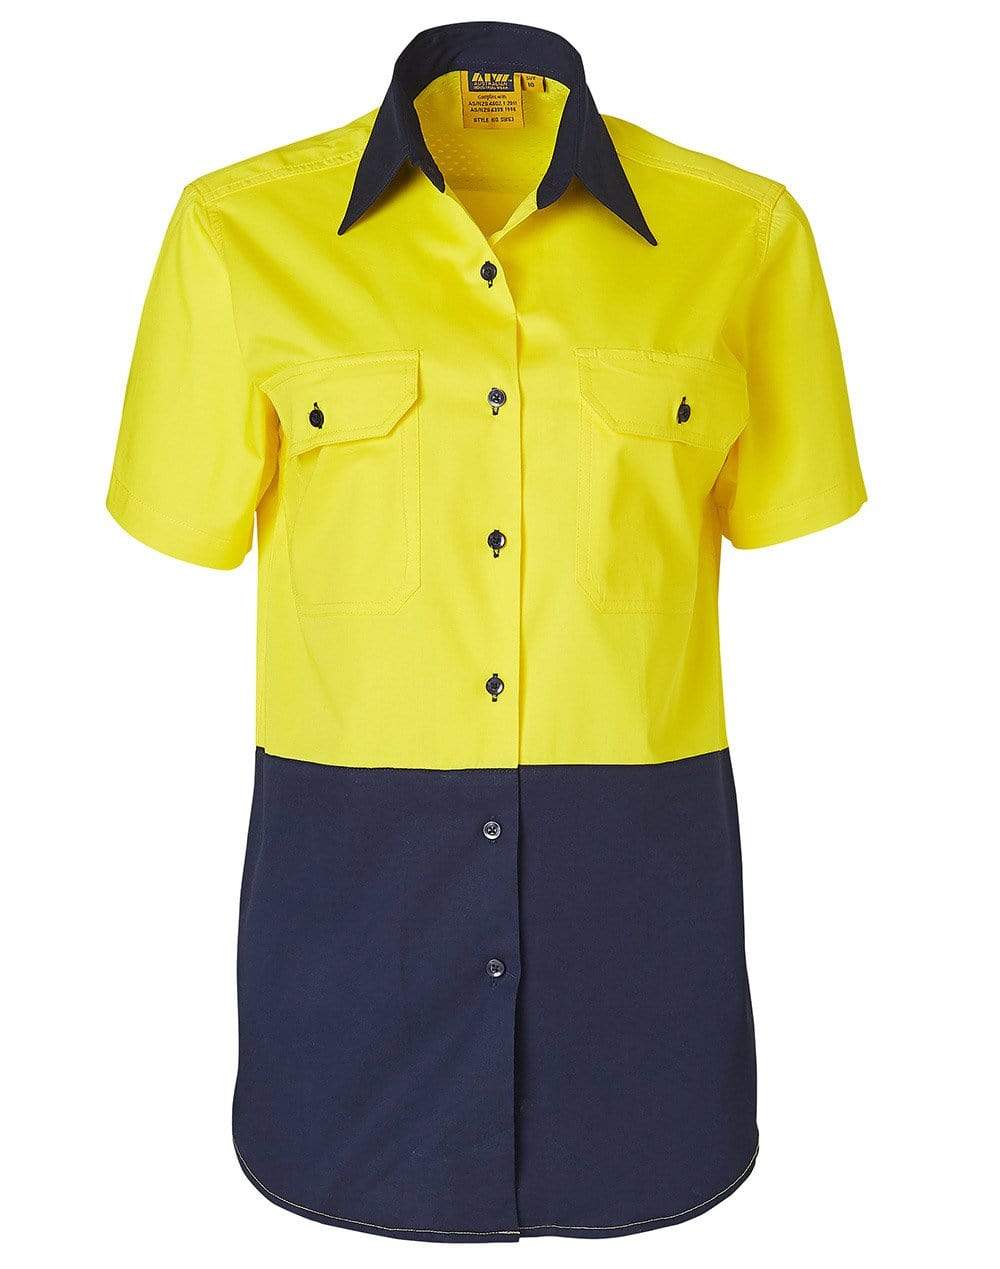 Women's Short Sleeve Safety Shirt SW63 Work Wear Australian Industrial Wear 8 Fluoro Yellow/Navy 